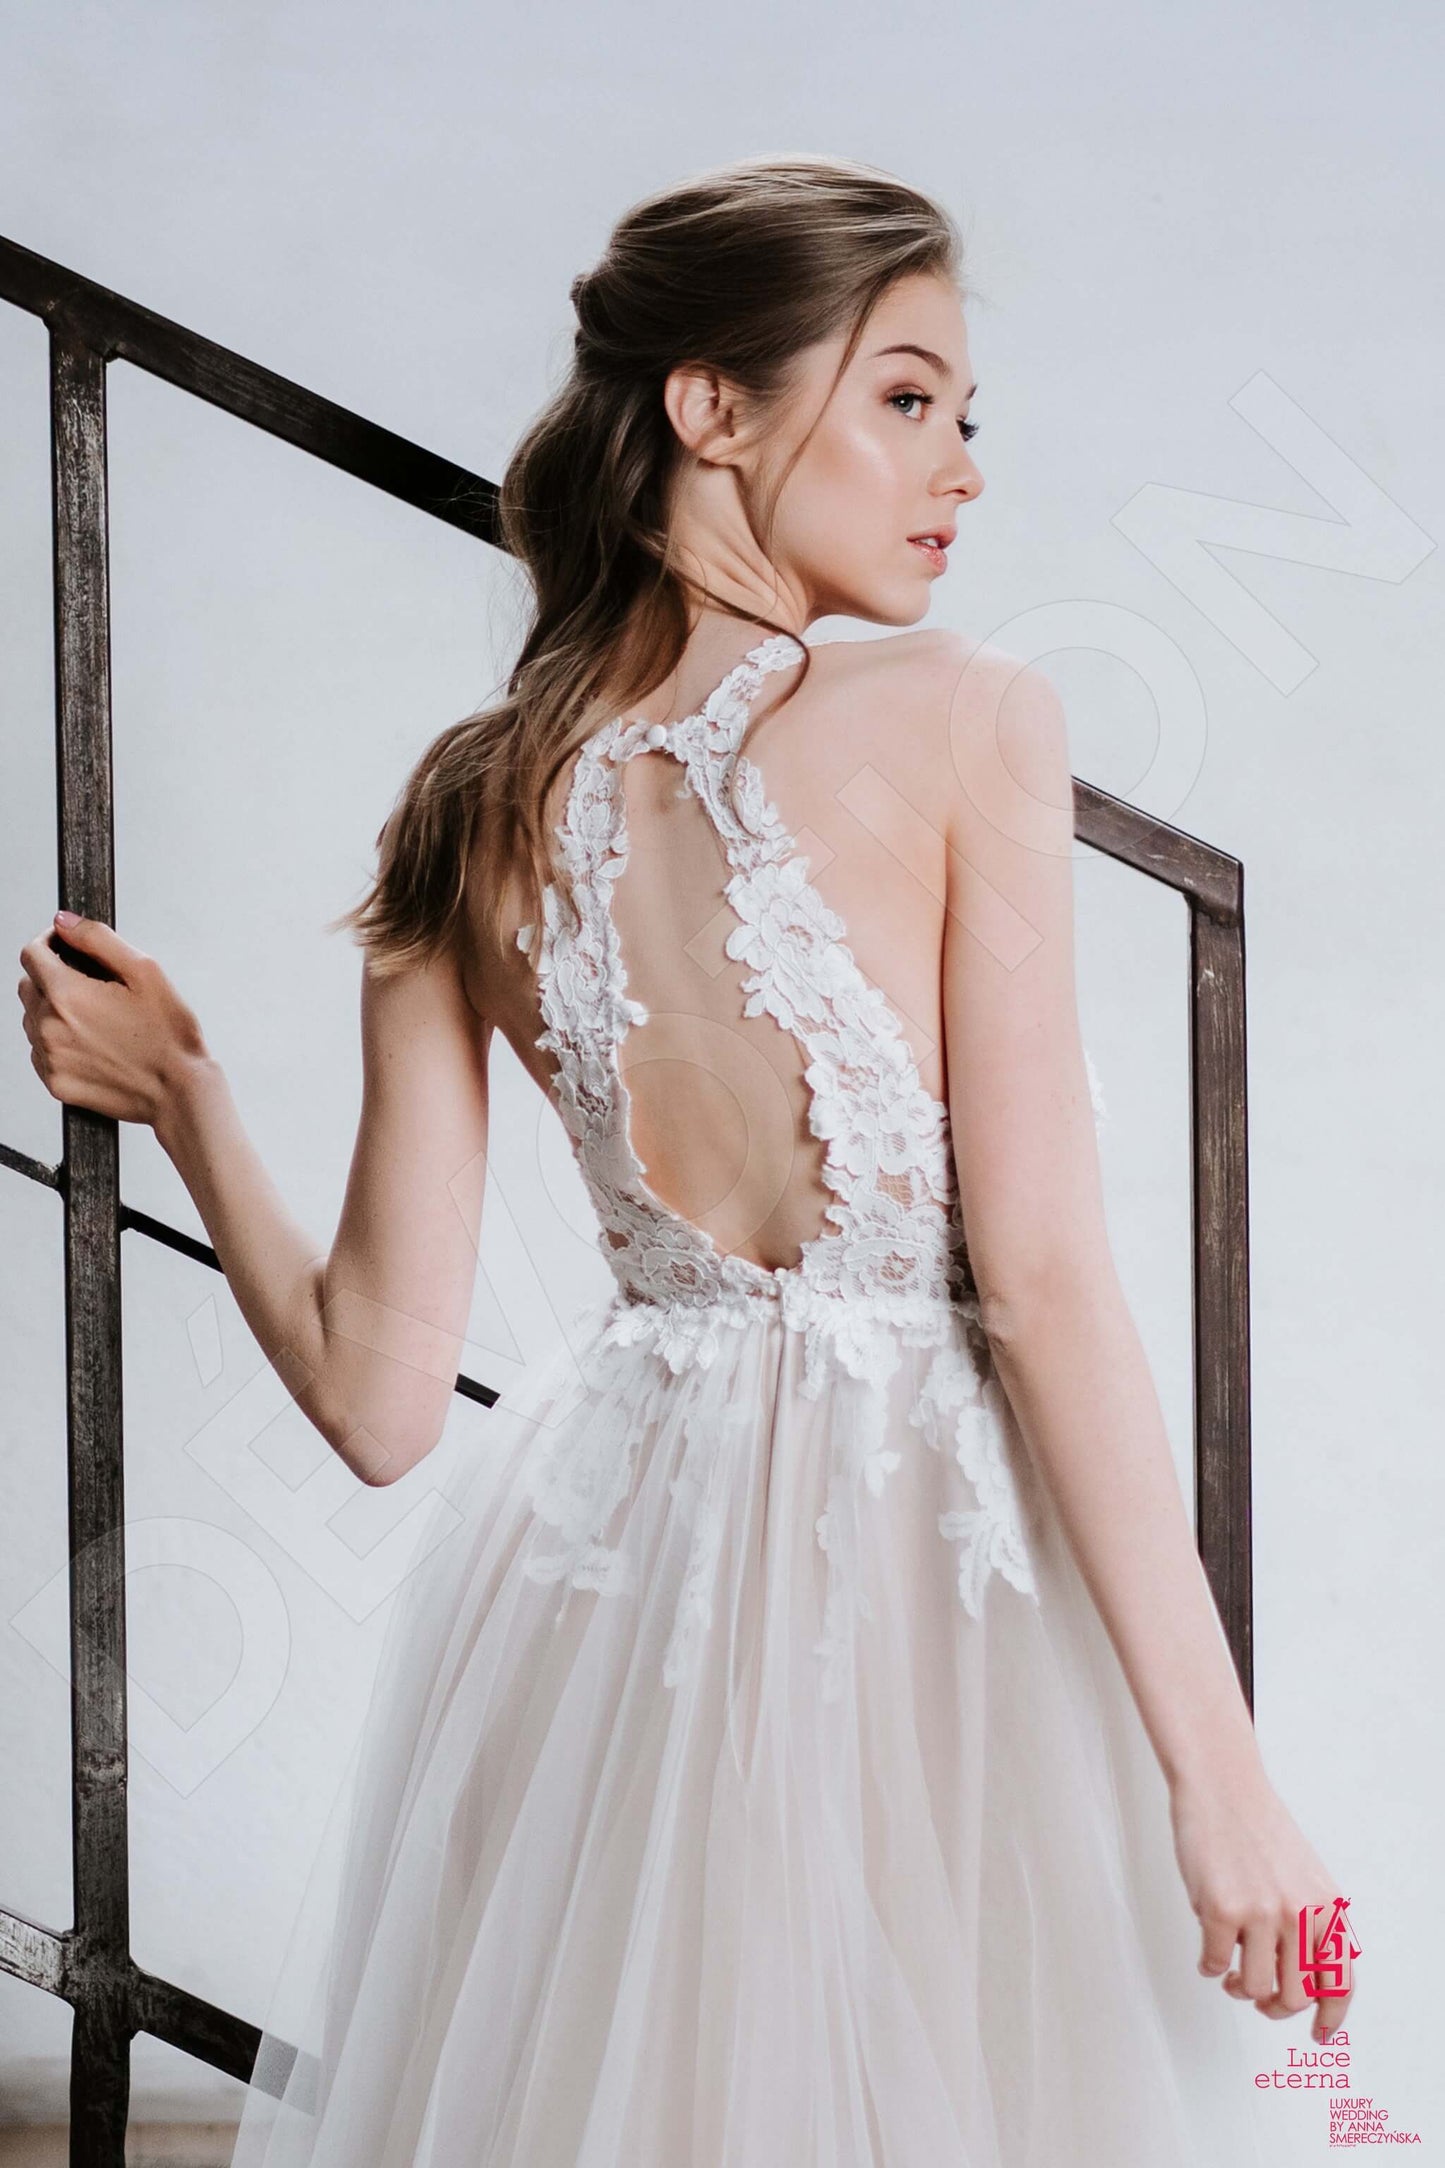 Laren Full back A-line Straps Wedding Dress 3